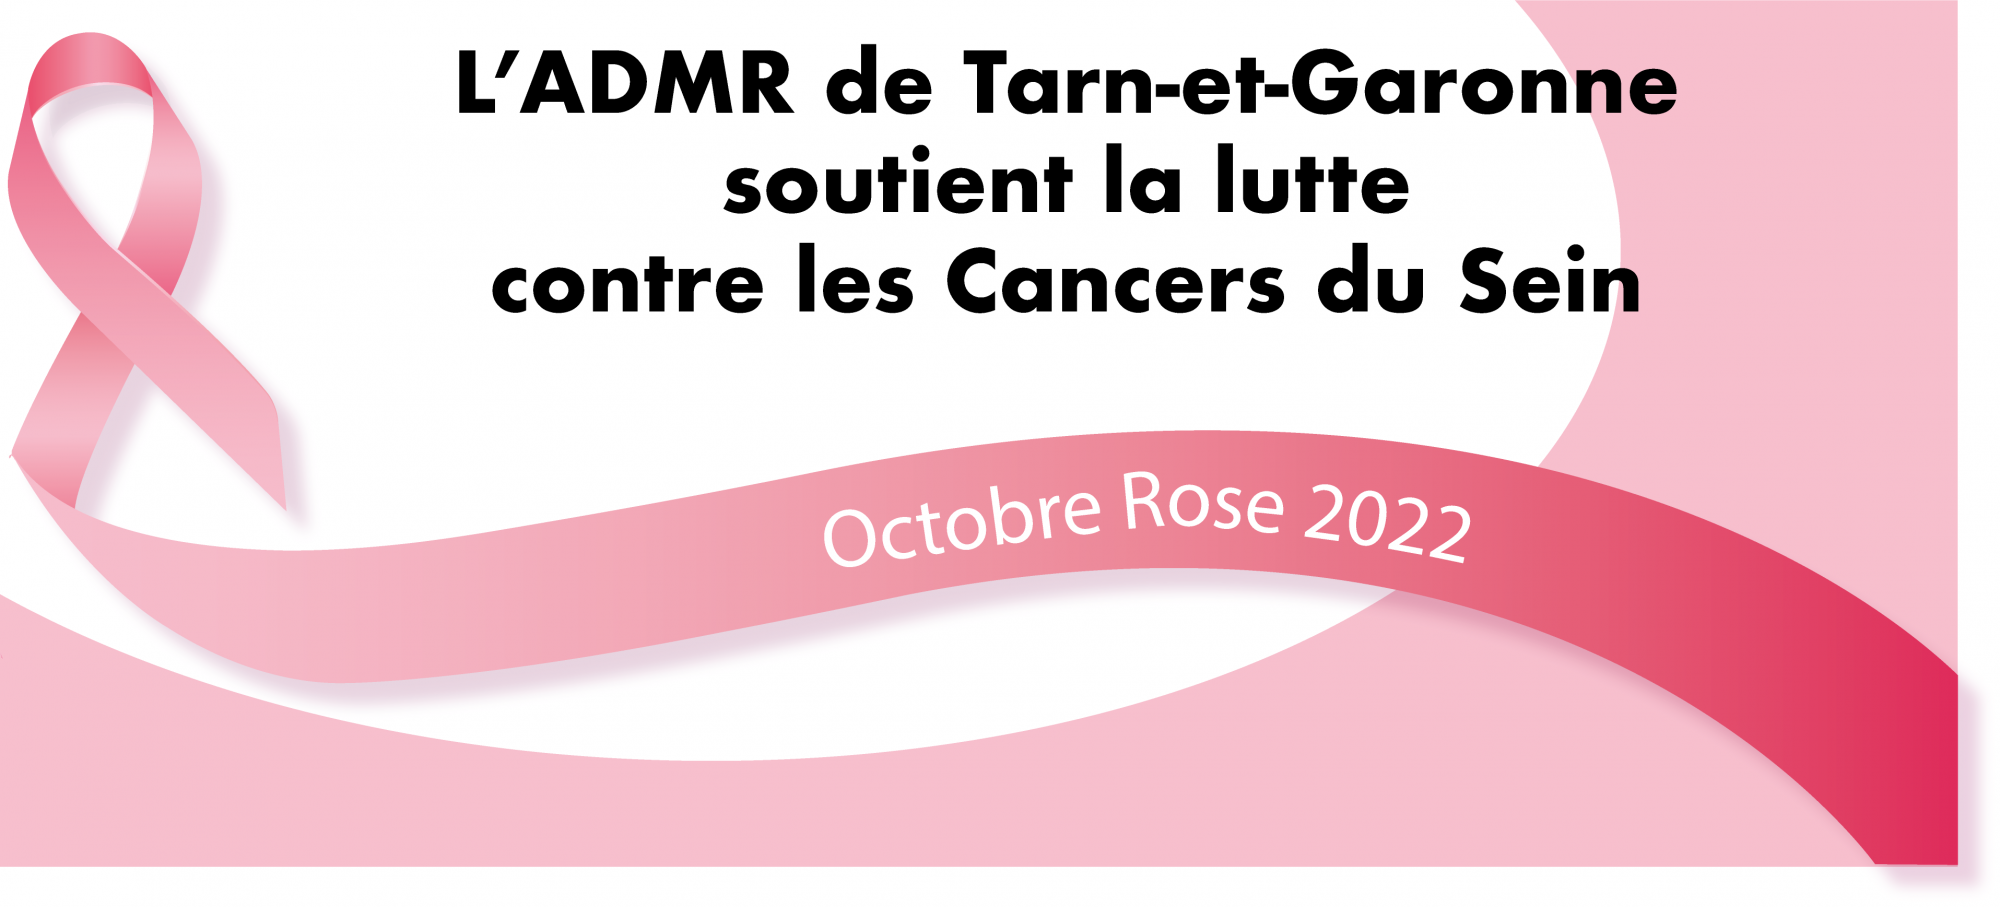 L'ADMR de Tarn-et-Garonne soutient Octobre Rose